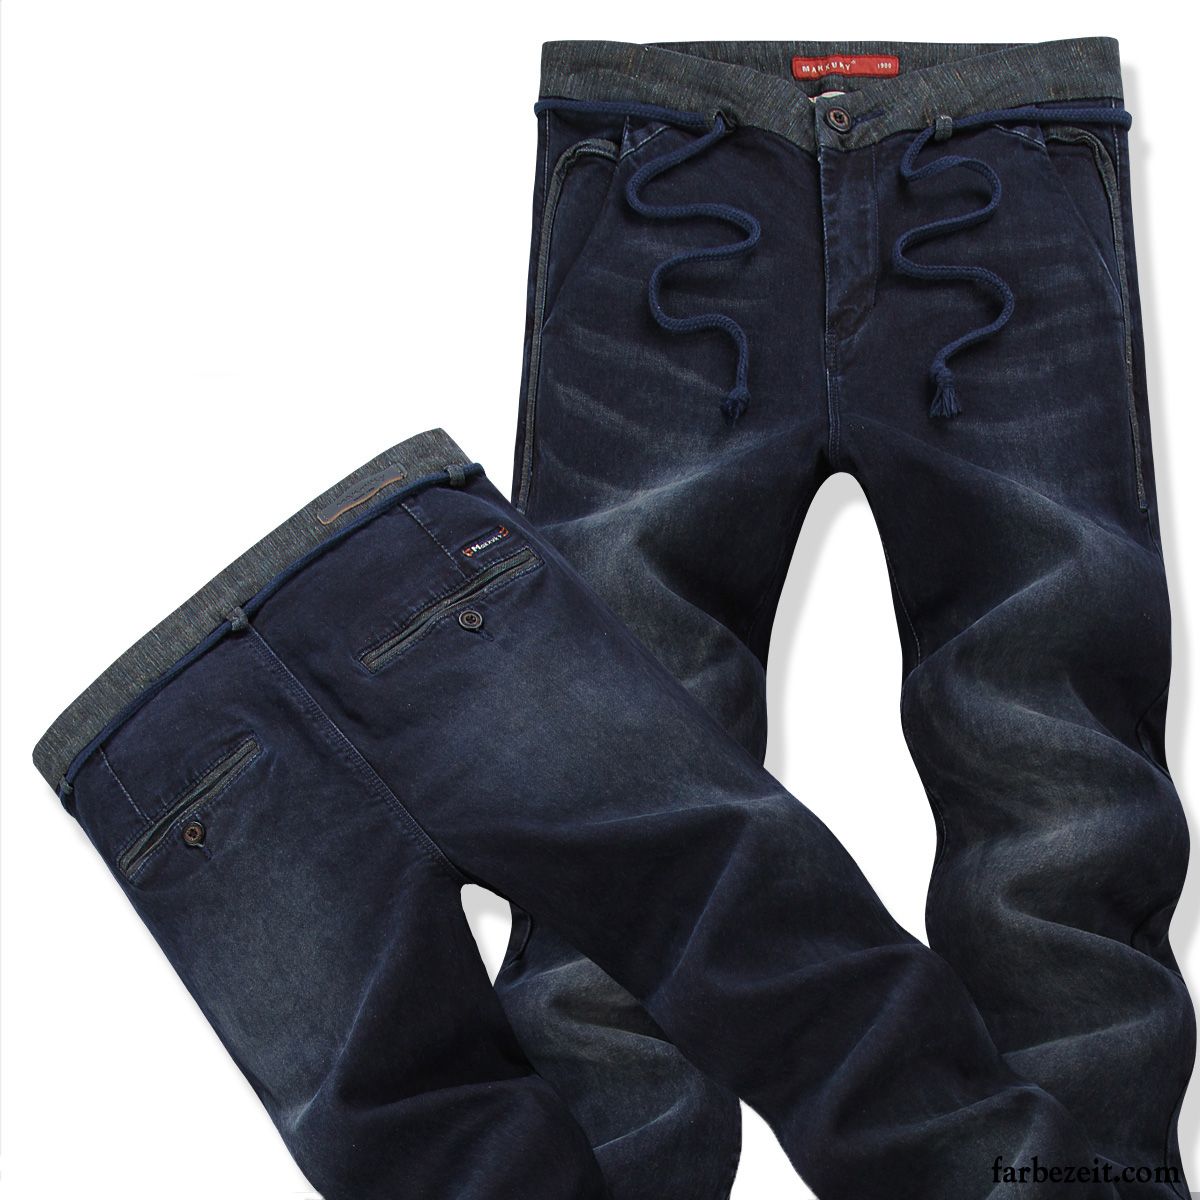 Zerrissene Skinny Jeans Herren Gerade Schnürung Dünn Freizeit Schlank Jeans Winter Jugend Trend Kaufen